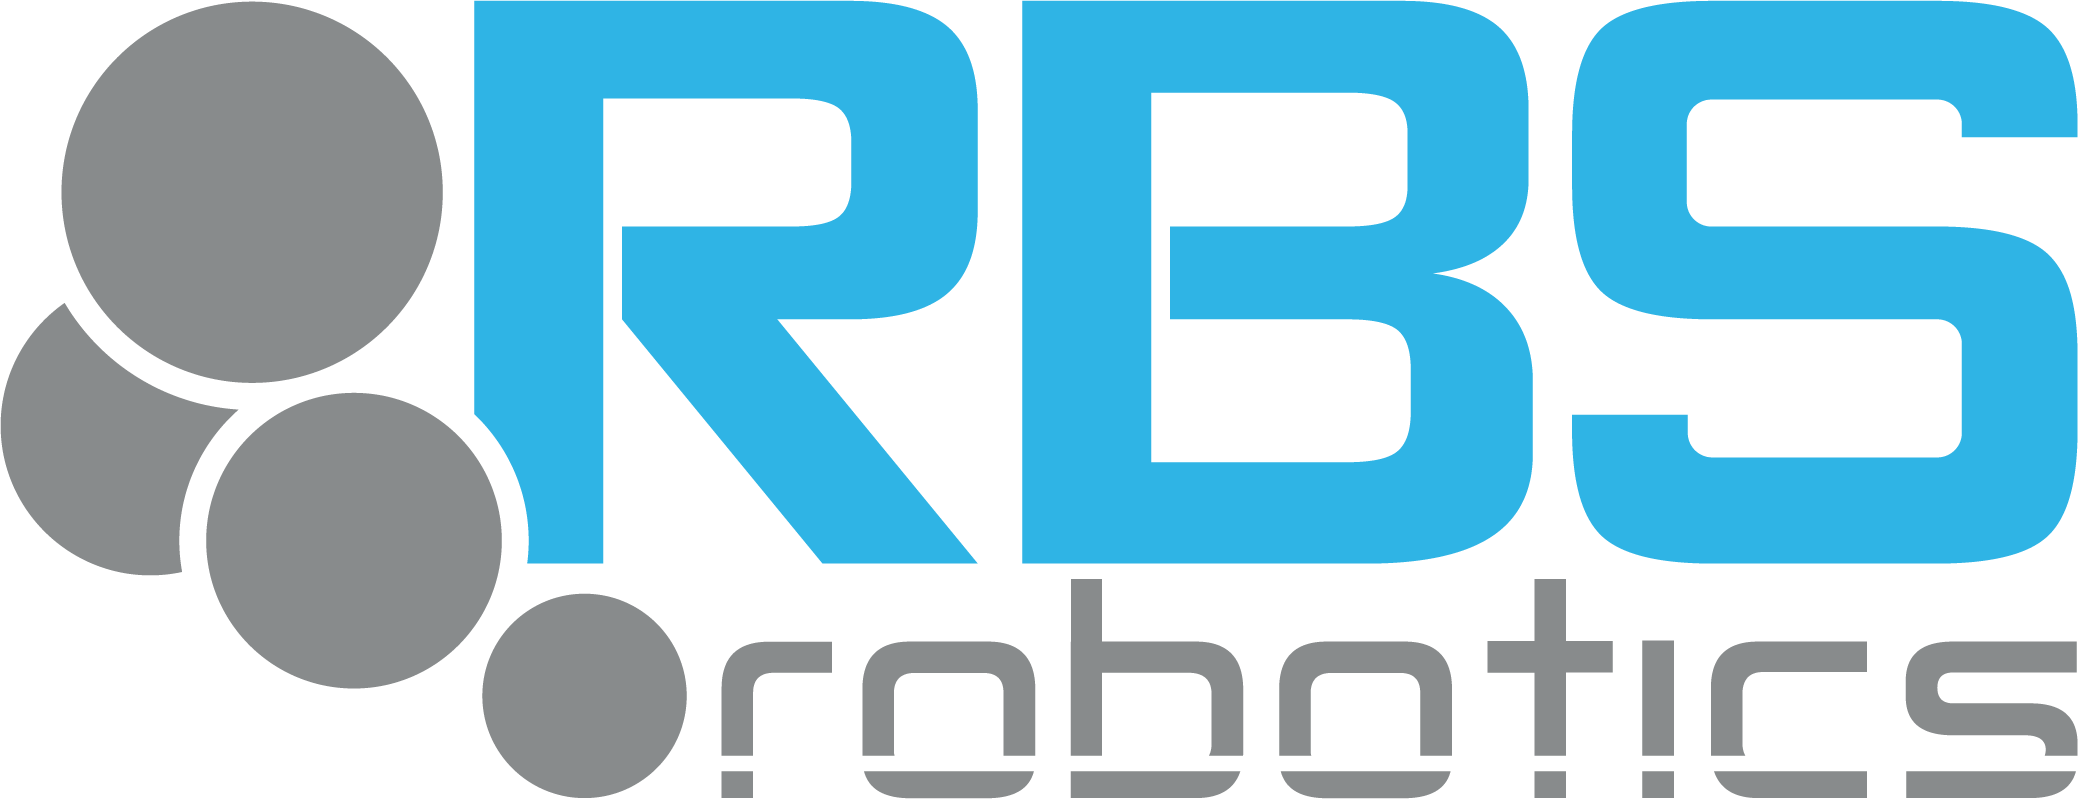 RBS_robotics - logo